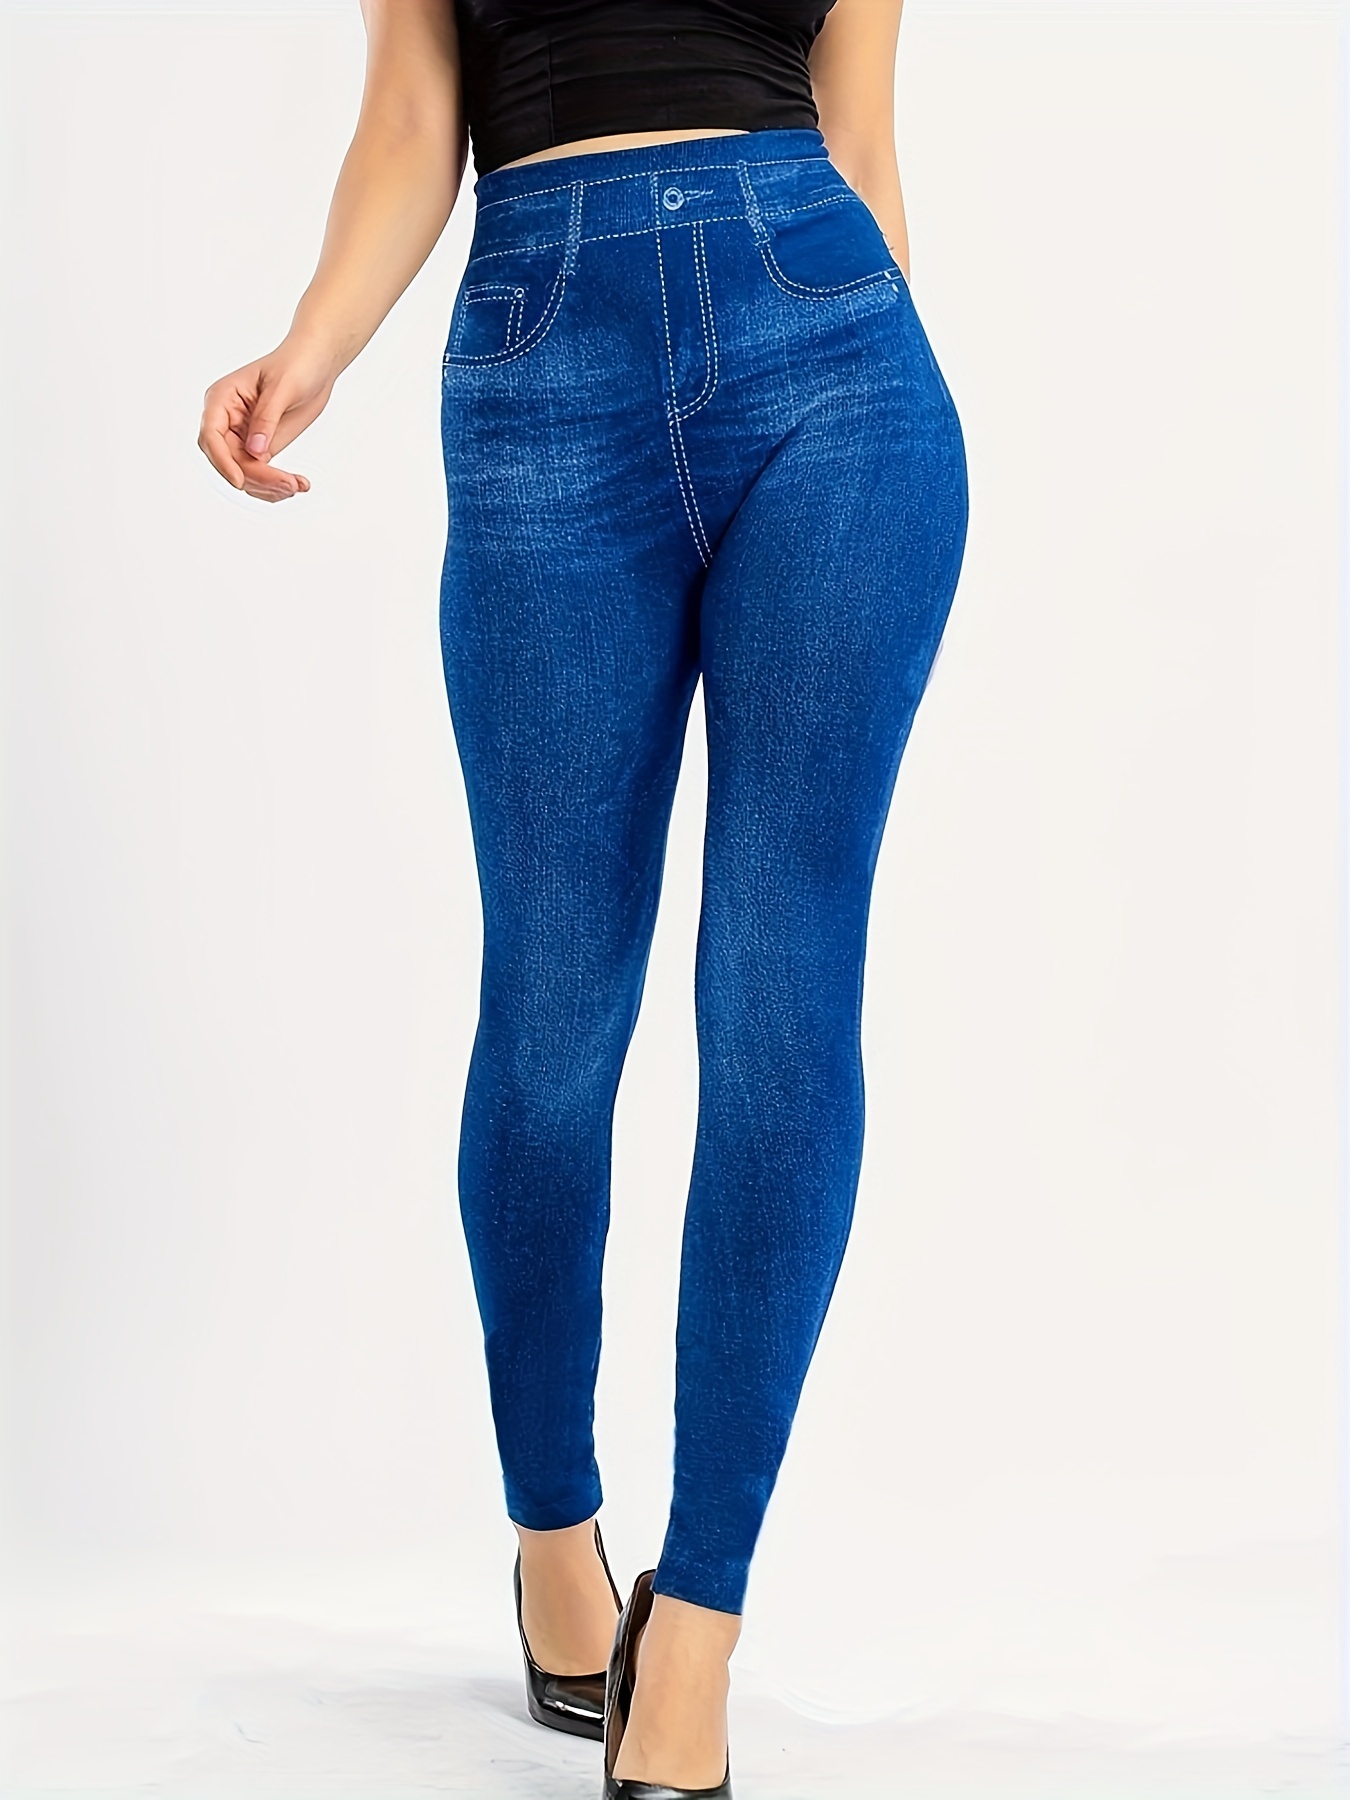 Ladies Denim Look Slim Skinny Jeans Stretchy Pants Leggings Jeggings  Fashion New